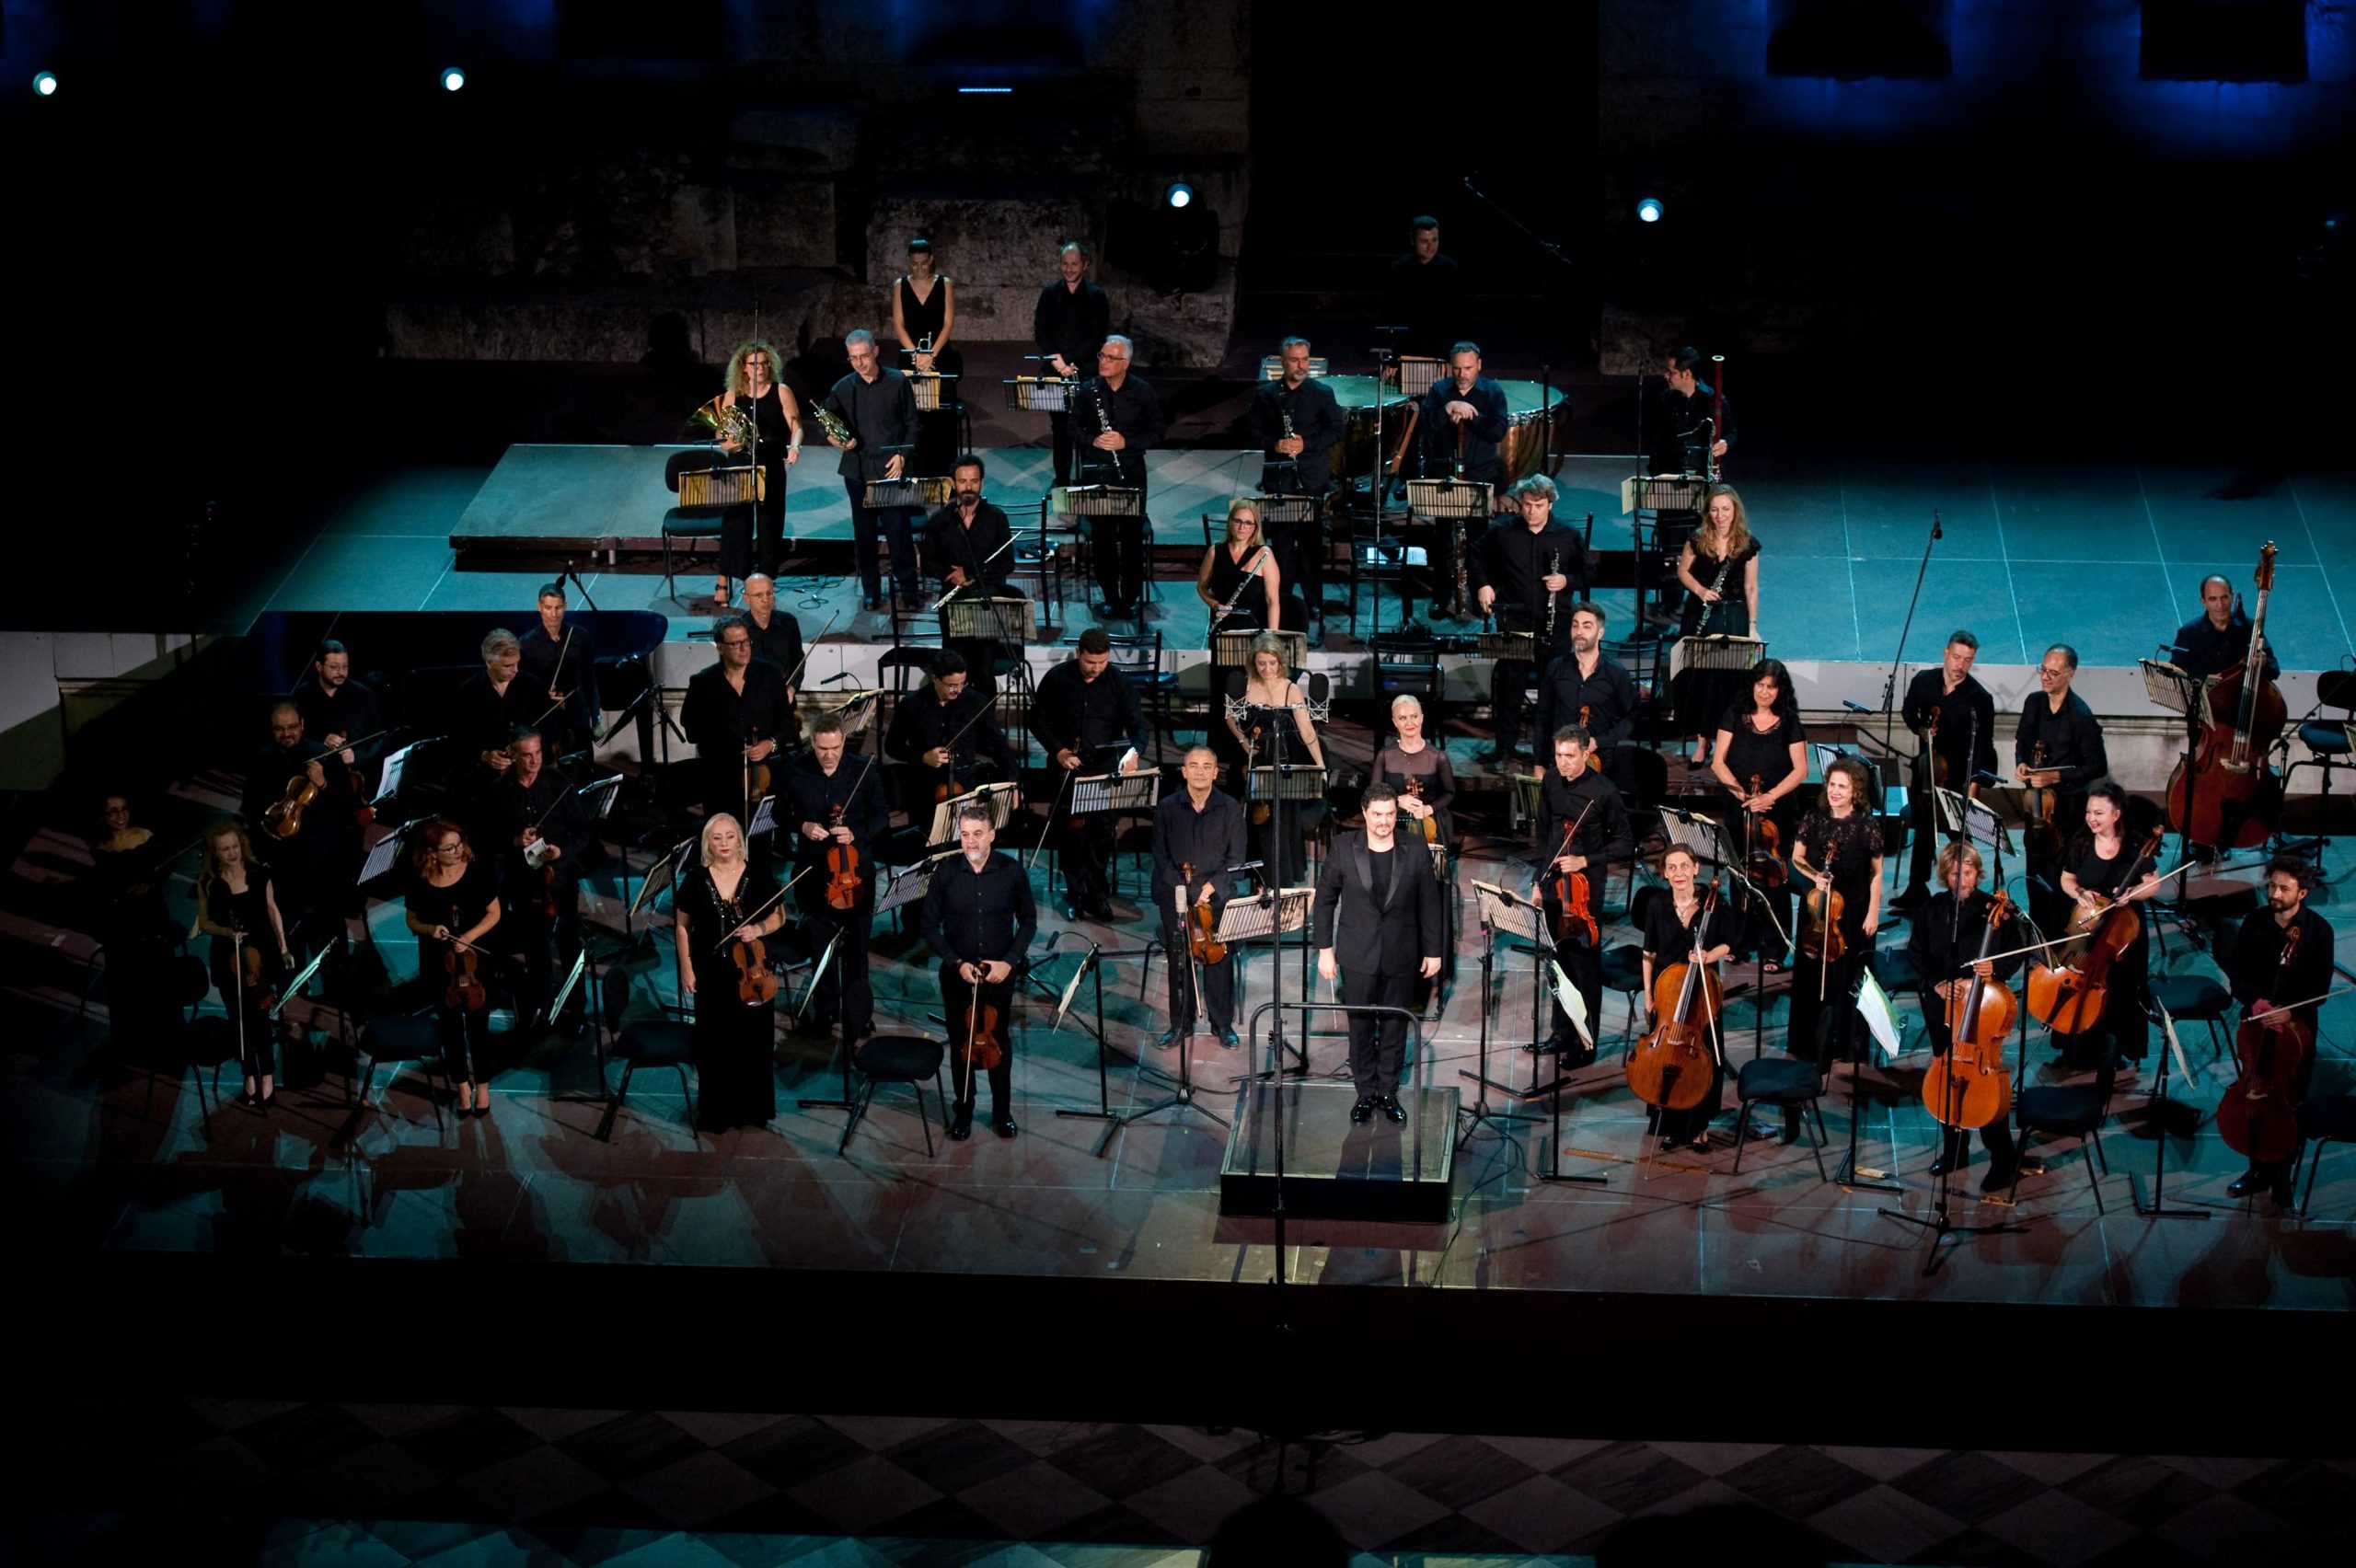 Εθνική Συμφωνική Ορχήστρα της ΕΡΤ - Ηρώδειο